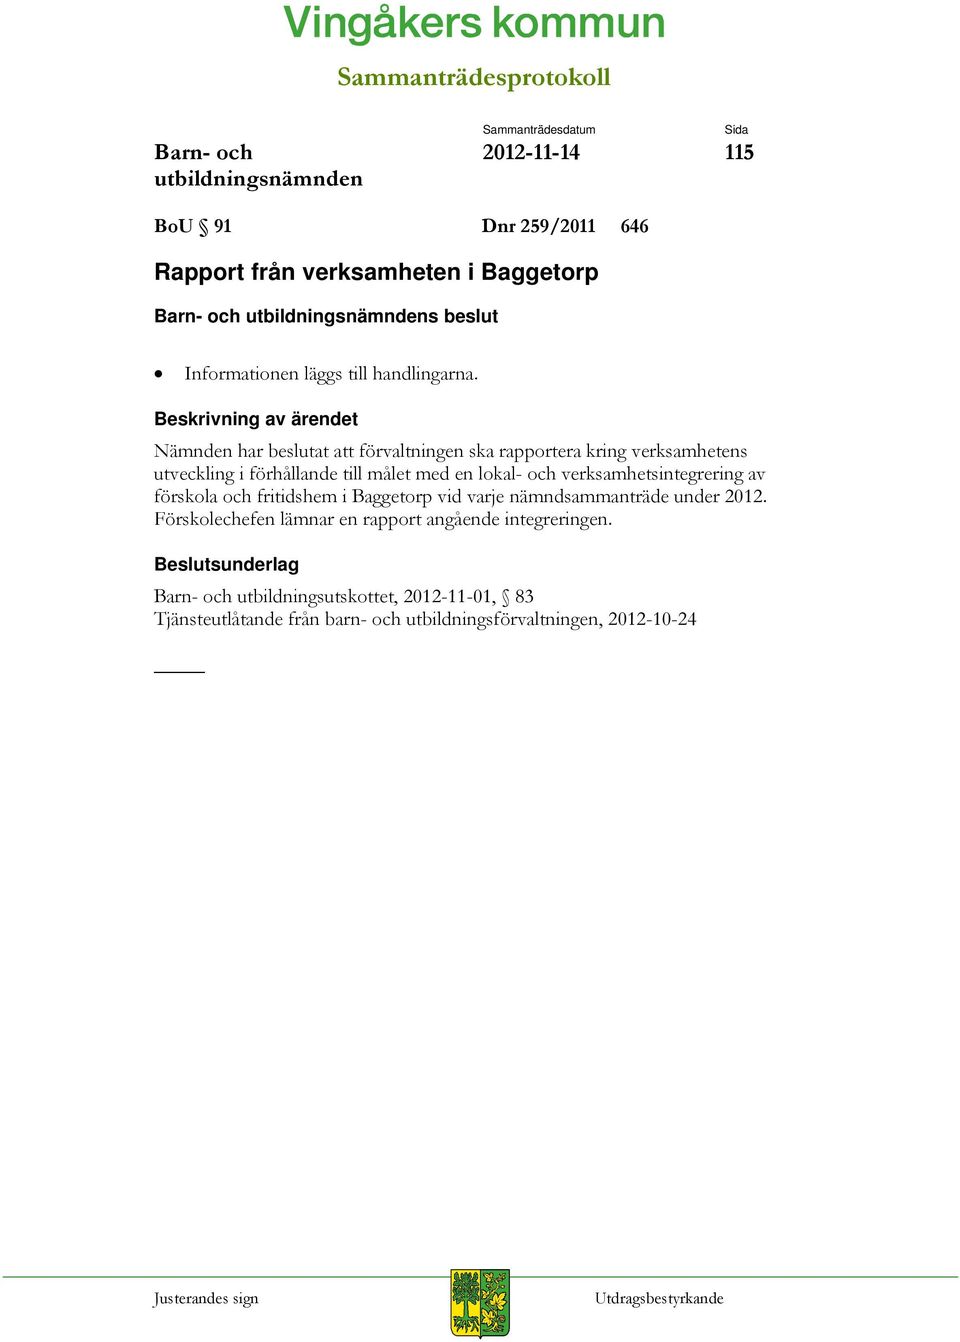 verksamhetsintegrering av förskola och fritidshem i Baggetorp vid varje nämndsammanträde under 2012.